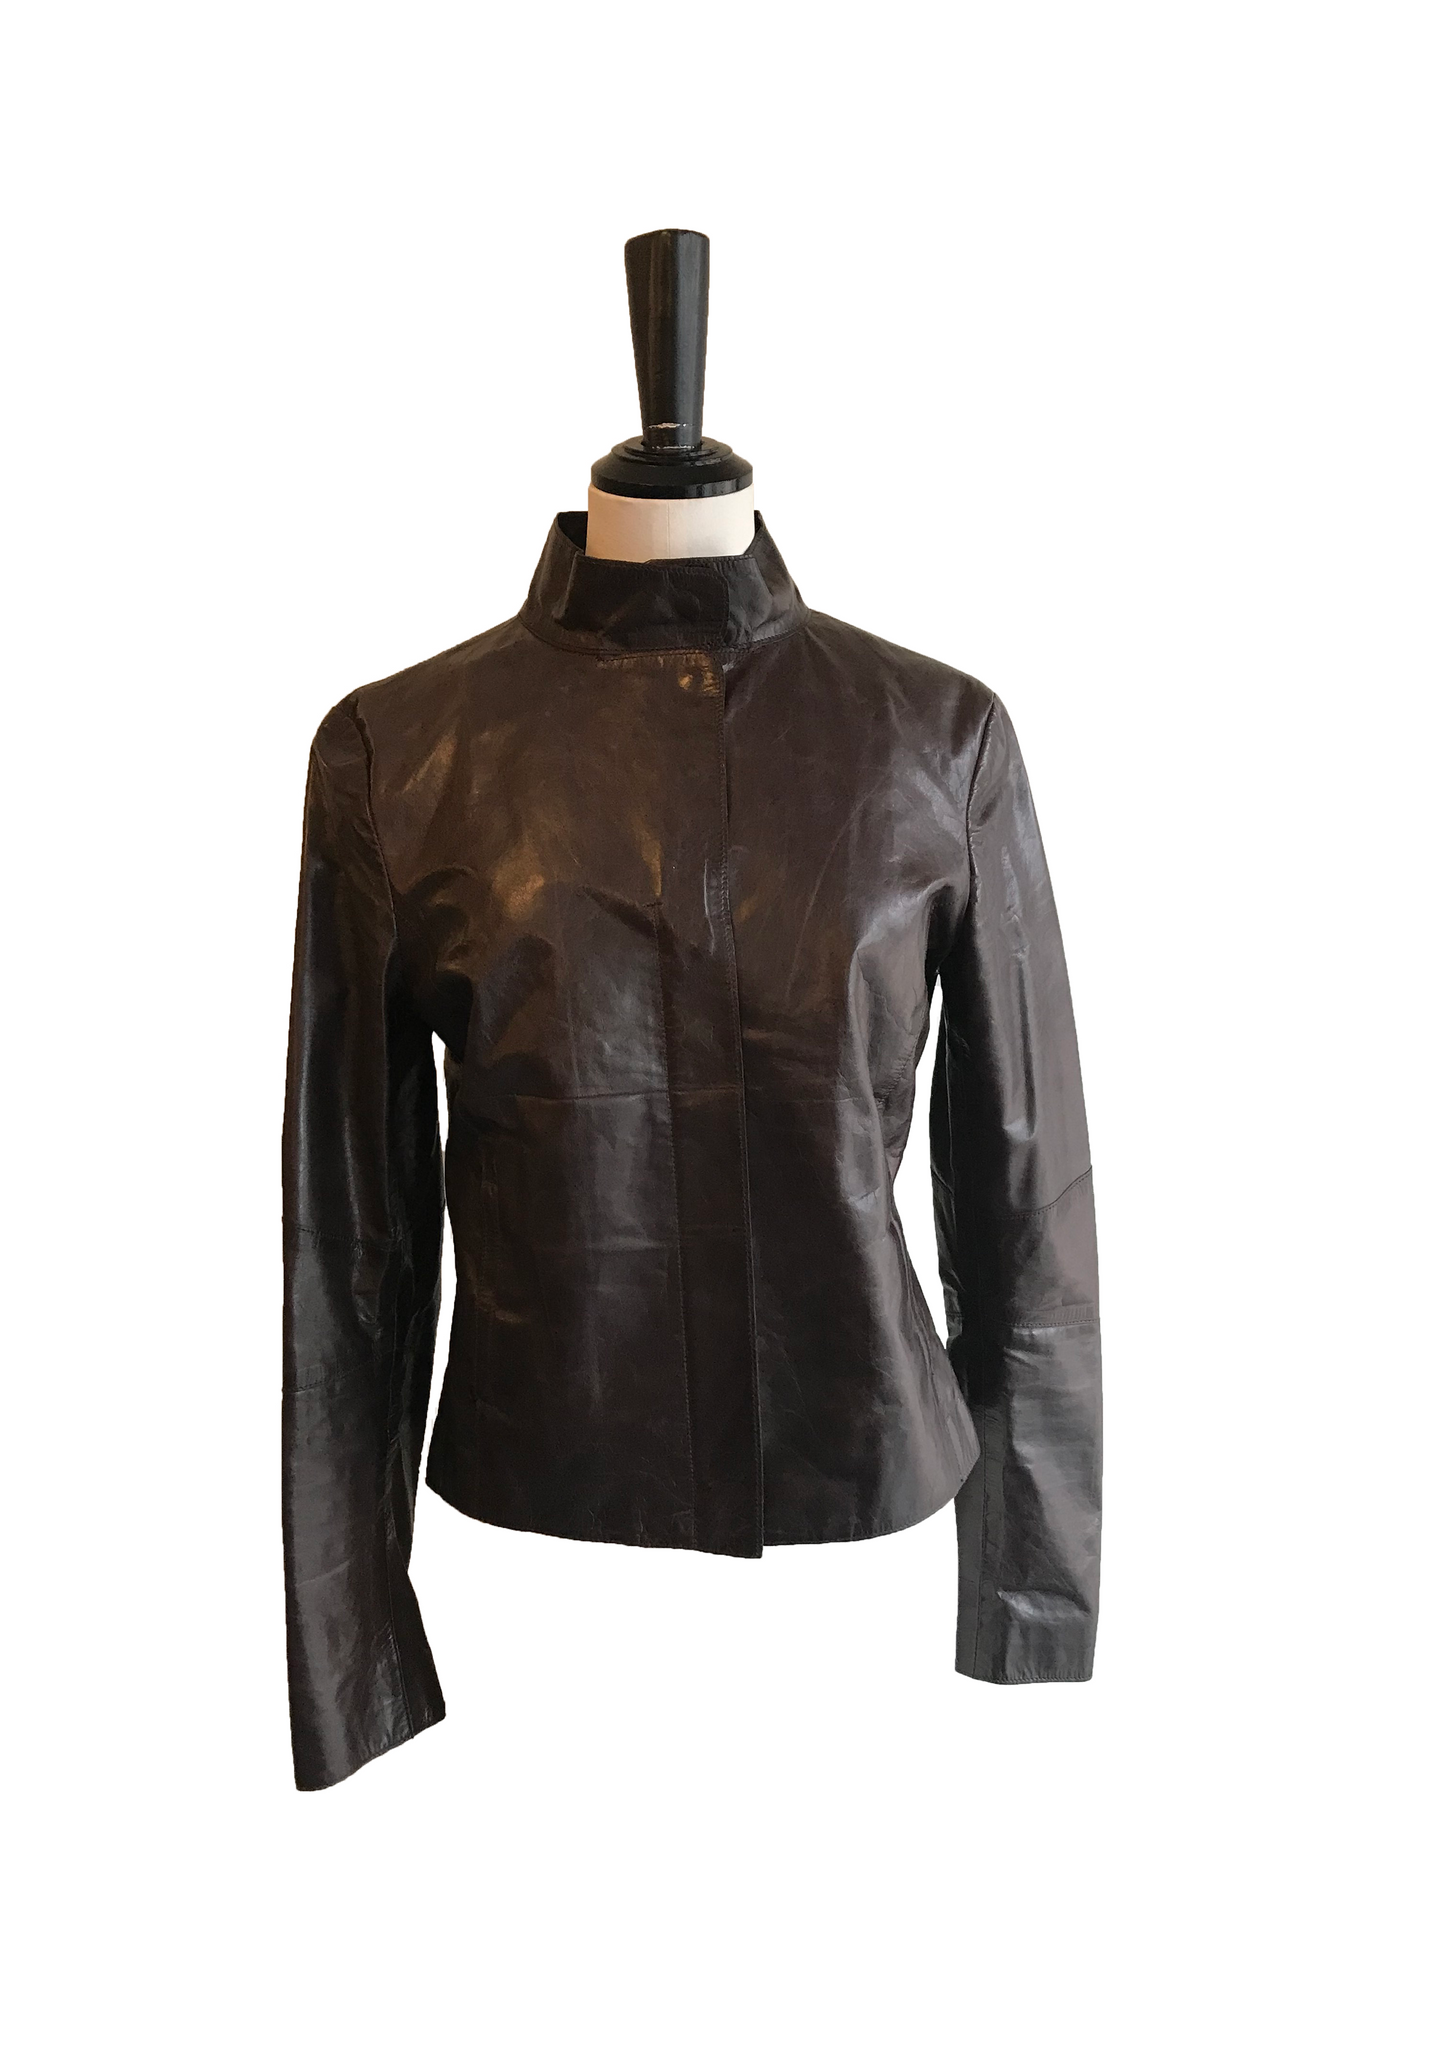 Isabella's Wardrobe M0851 Leather Jacket.